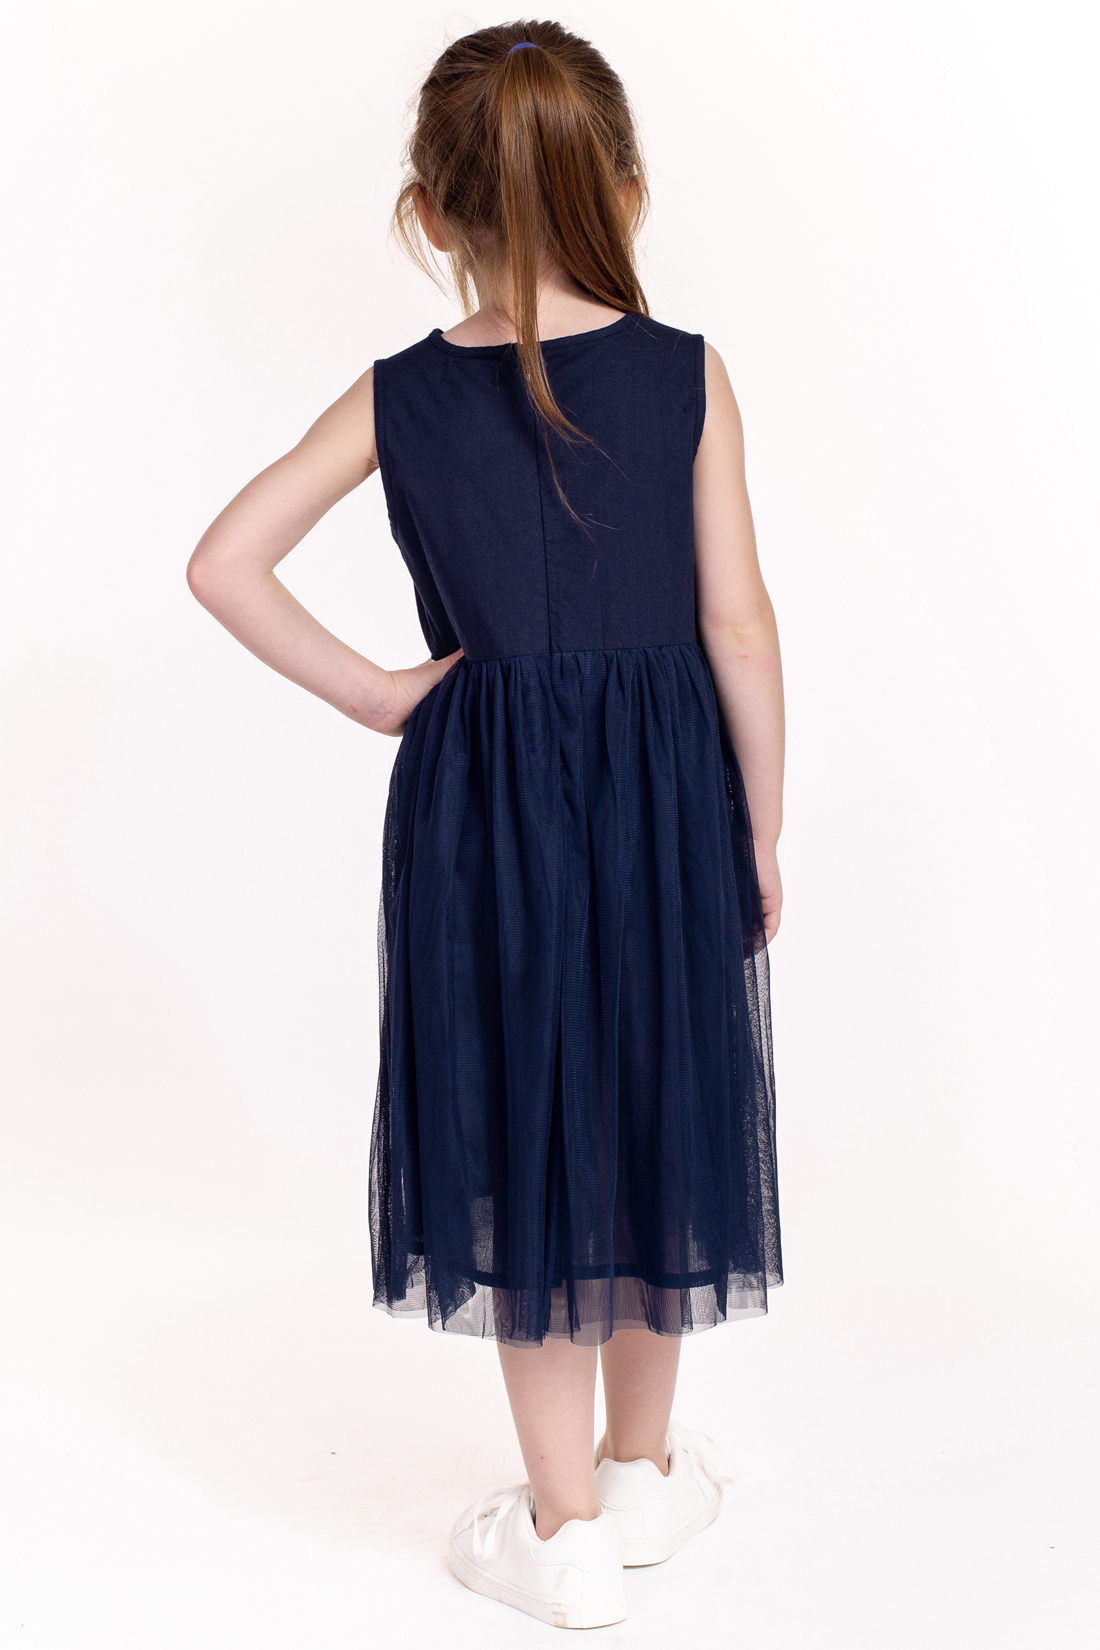 Платье для девочки (арт. baon BK459011), размер 122-128, цвет синий Платье для девочки (арт. baon BK459011) - фото 6